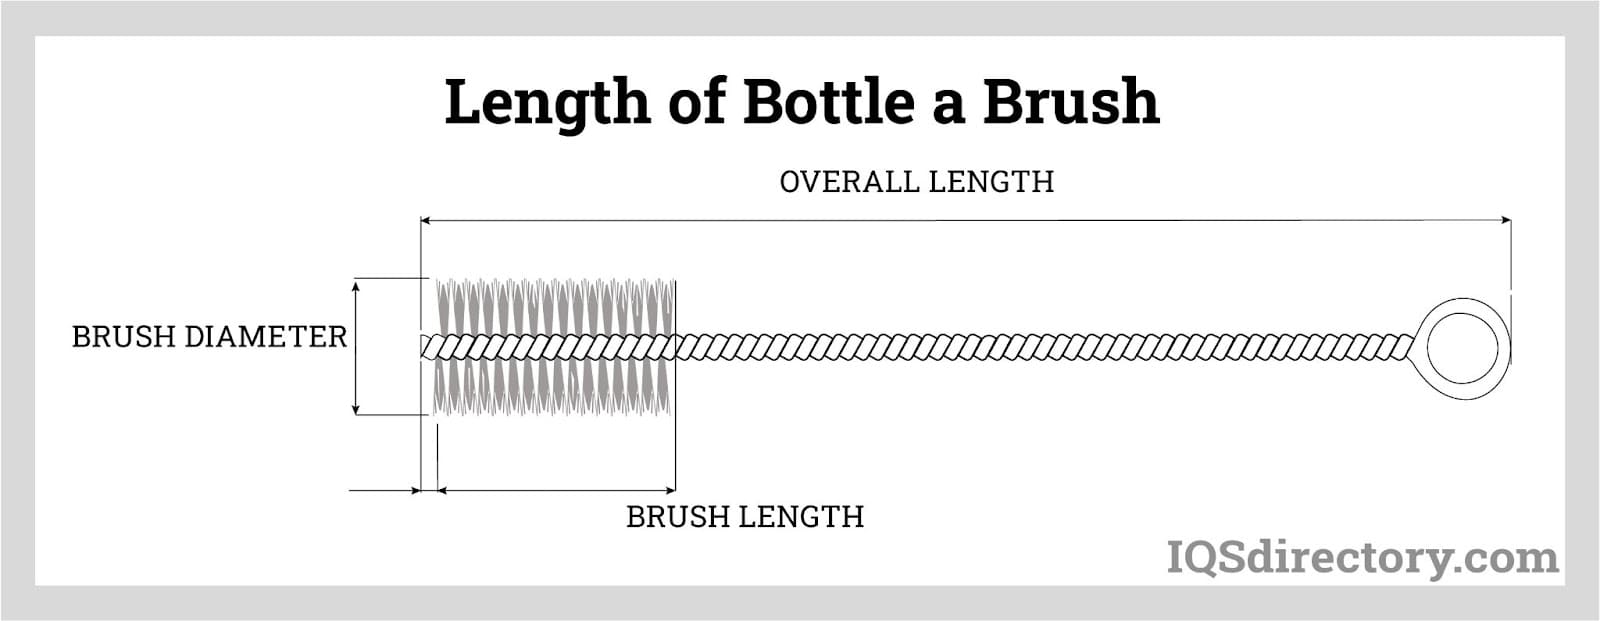 Length of Bottle a Brush